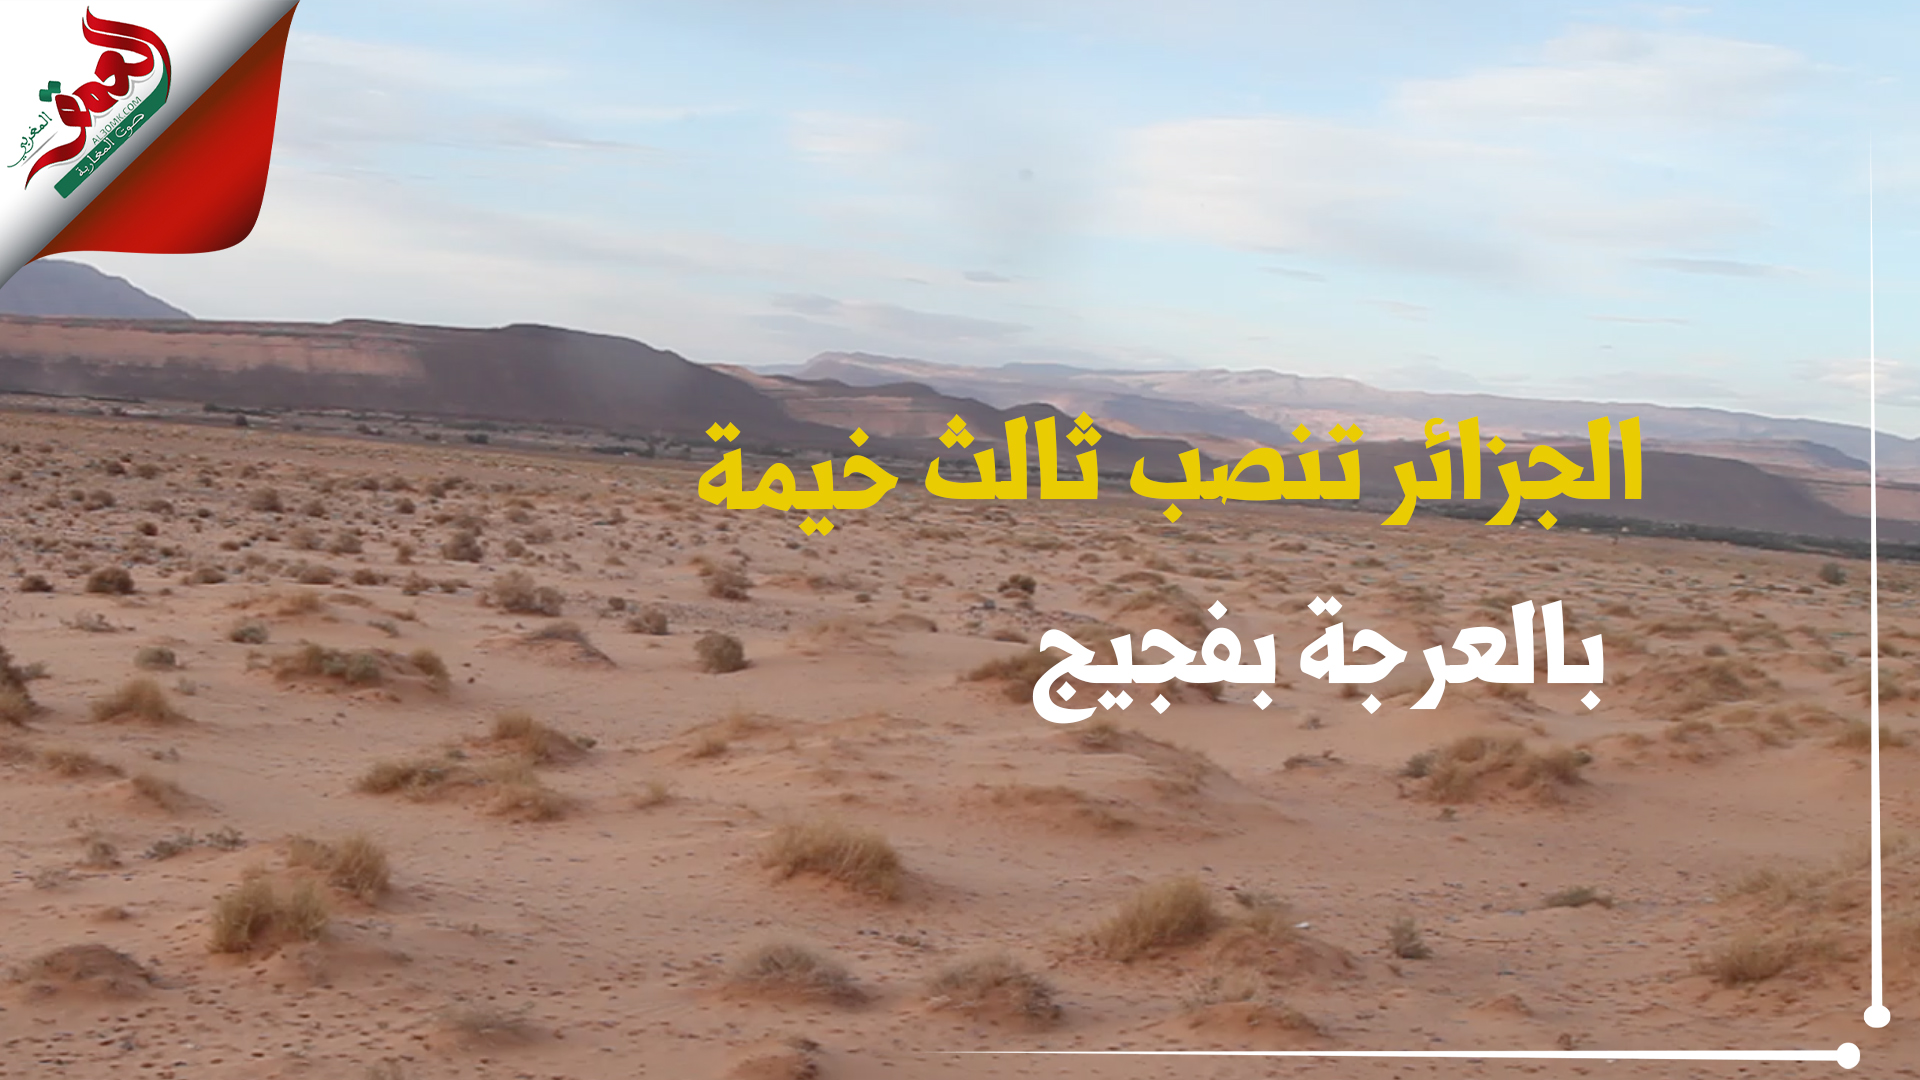 في أقرب نقطة من العرجة على الحدود بفجيج.. الجزائر تنصب ثالث خيمة عسكرية لها (فيديو)